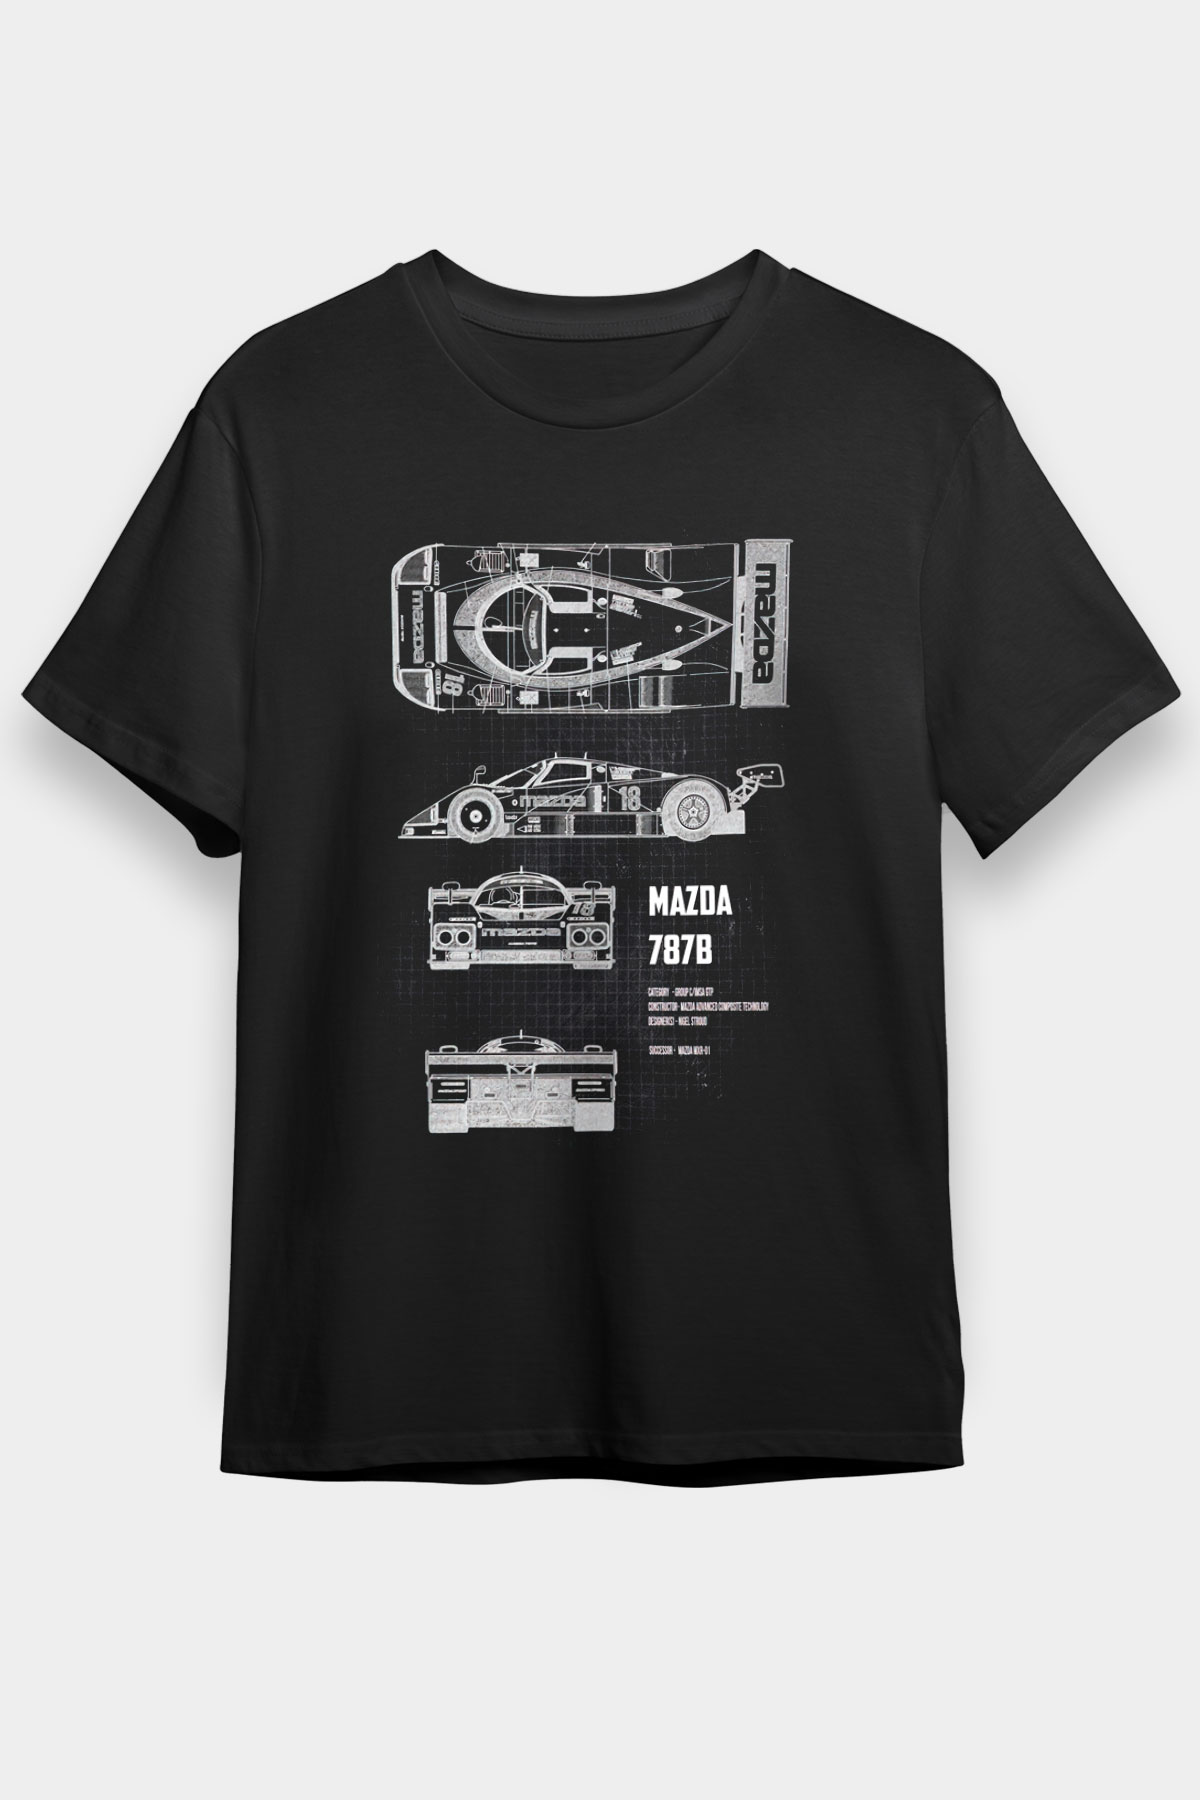 Mazda-787b Cars,Racing,Unisex,Tshirt 01